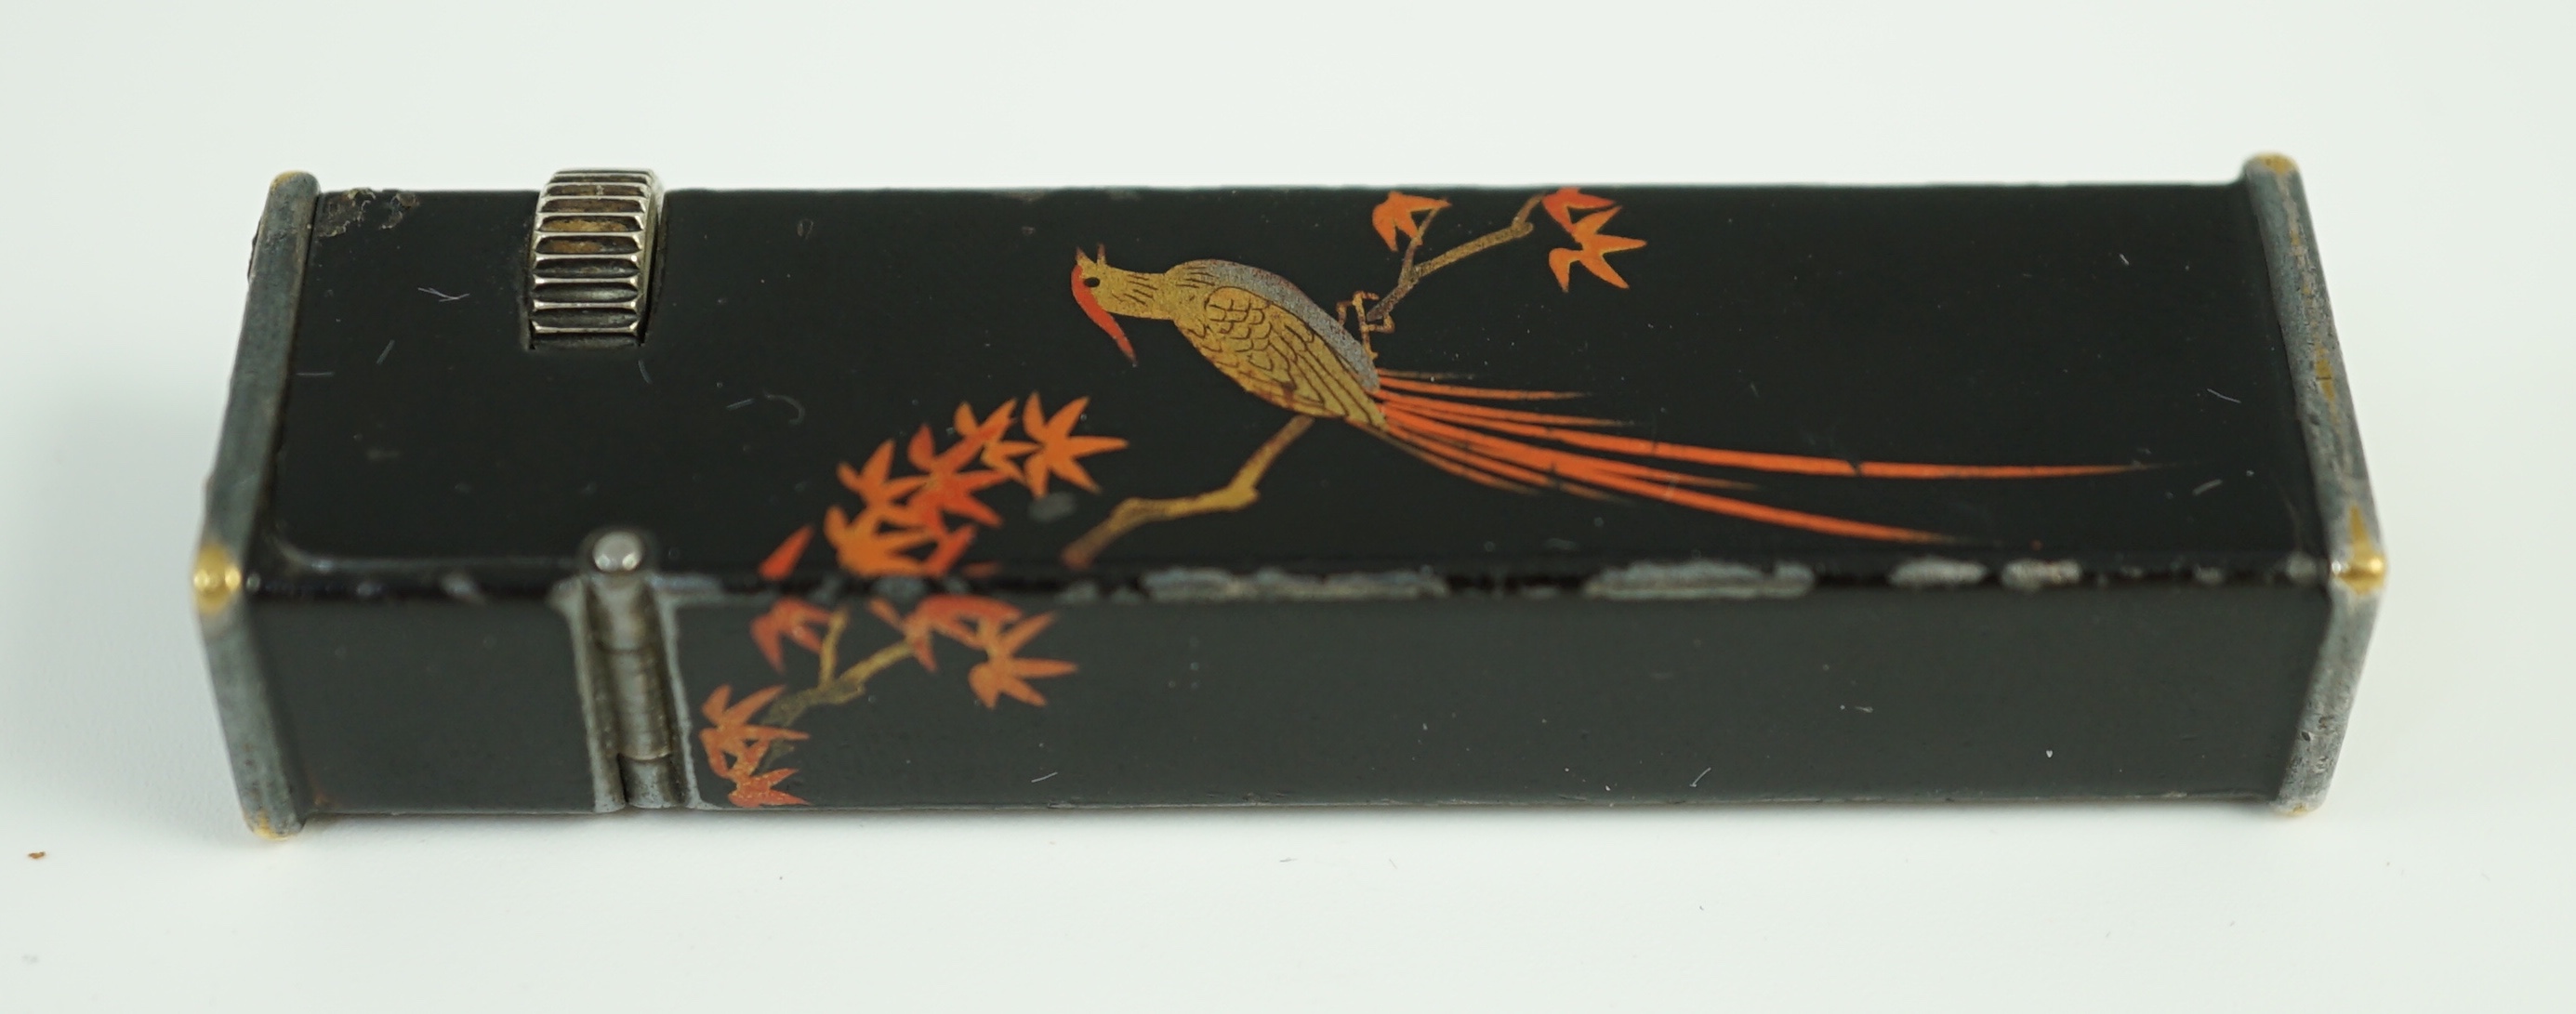 A Dunhill Namiki maki-e (lacquer) tallboy lighter, c.1930, 6.4 cm high